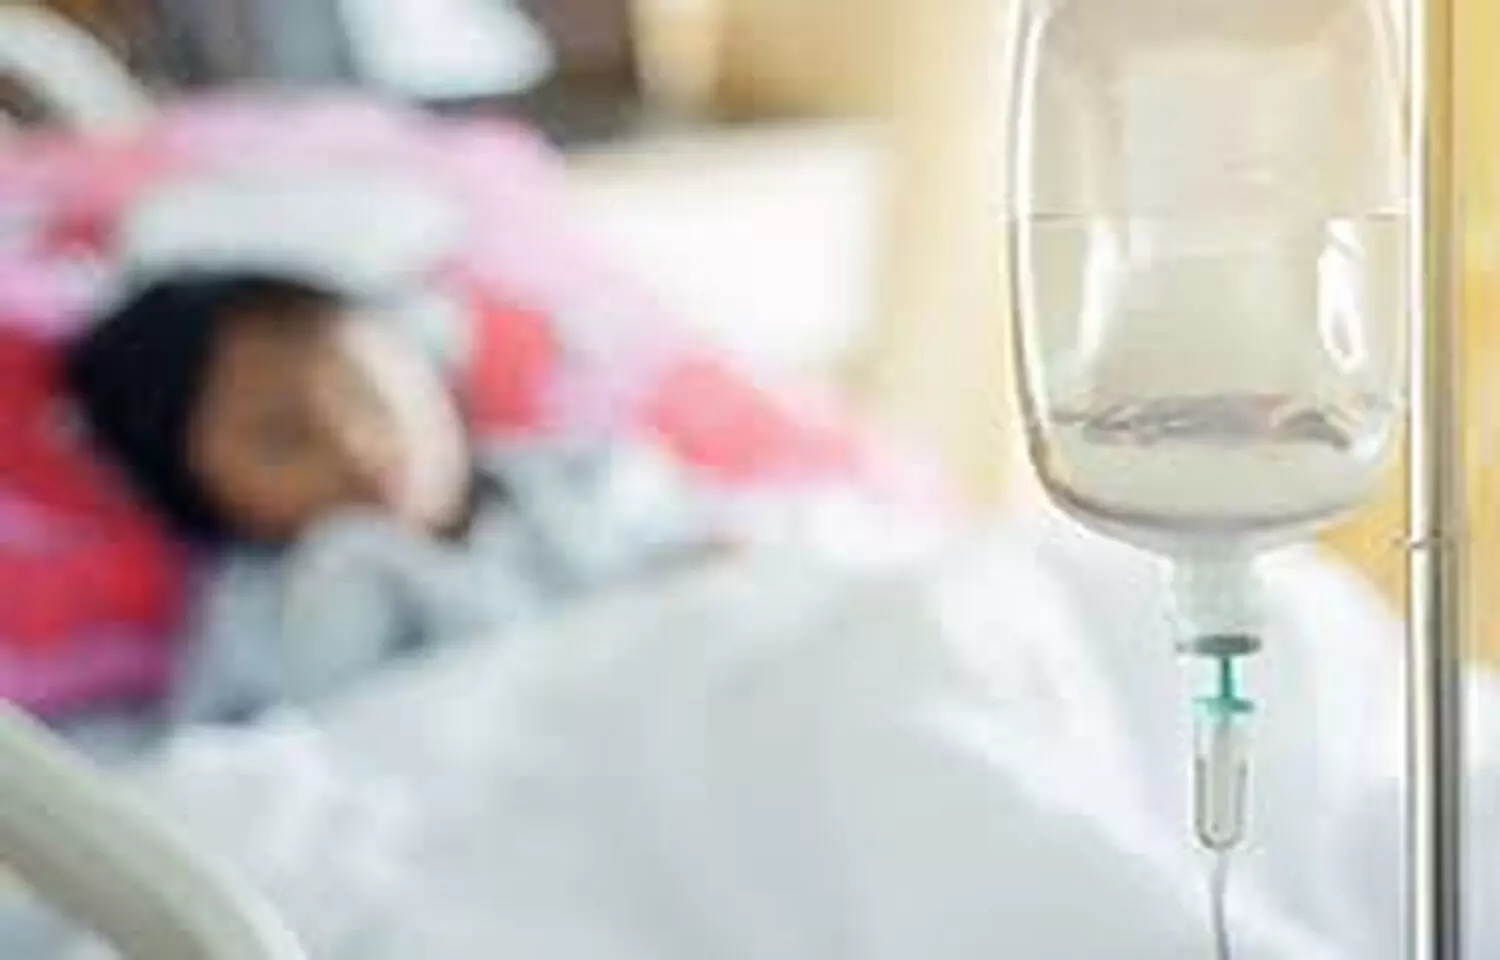 Use of plasmalike isotonic fluids may be harmful for acutely ill children: JAMA